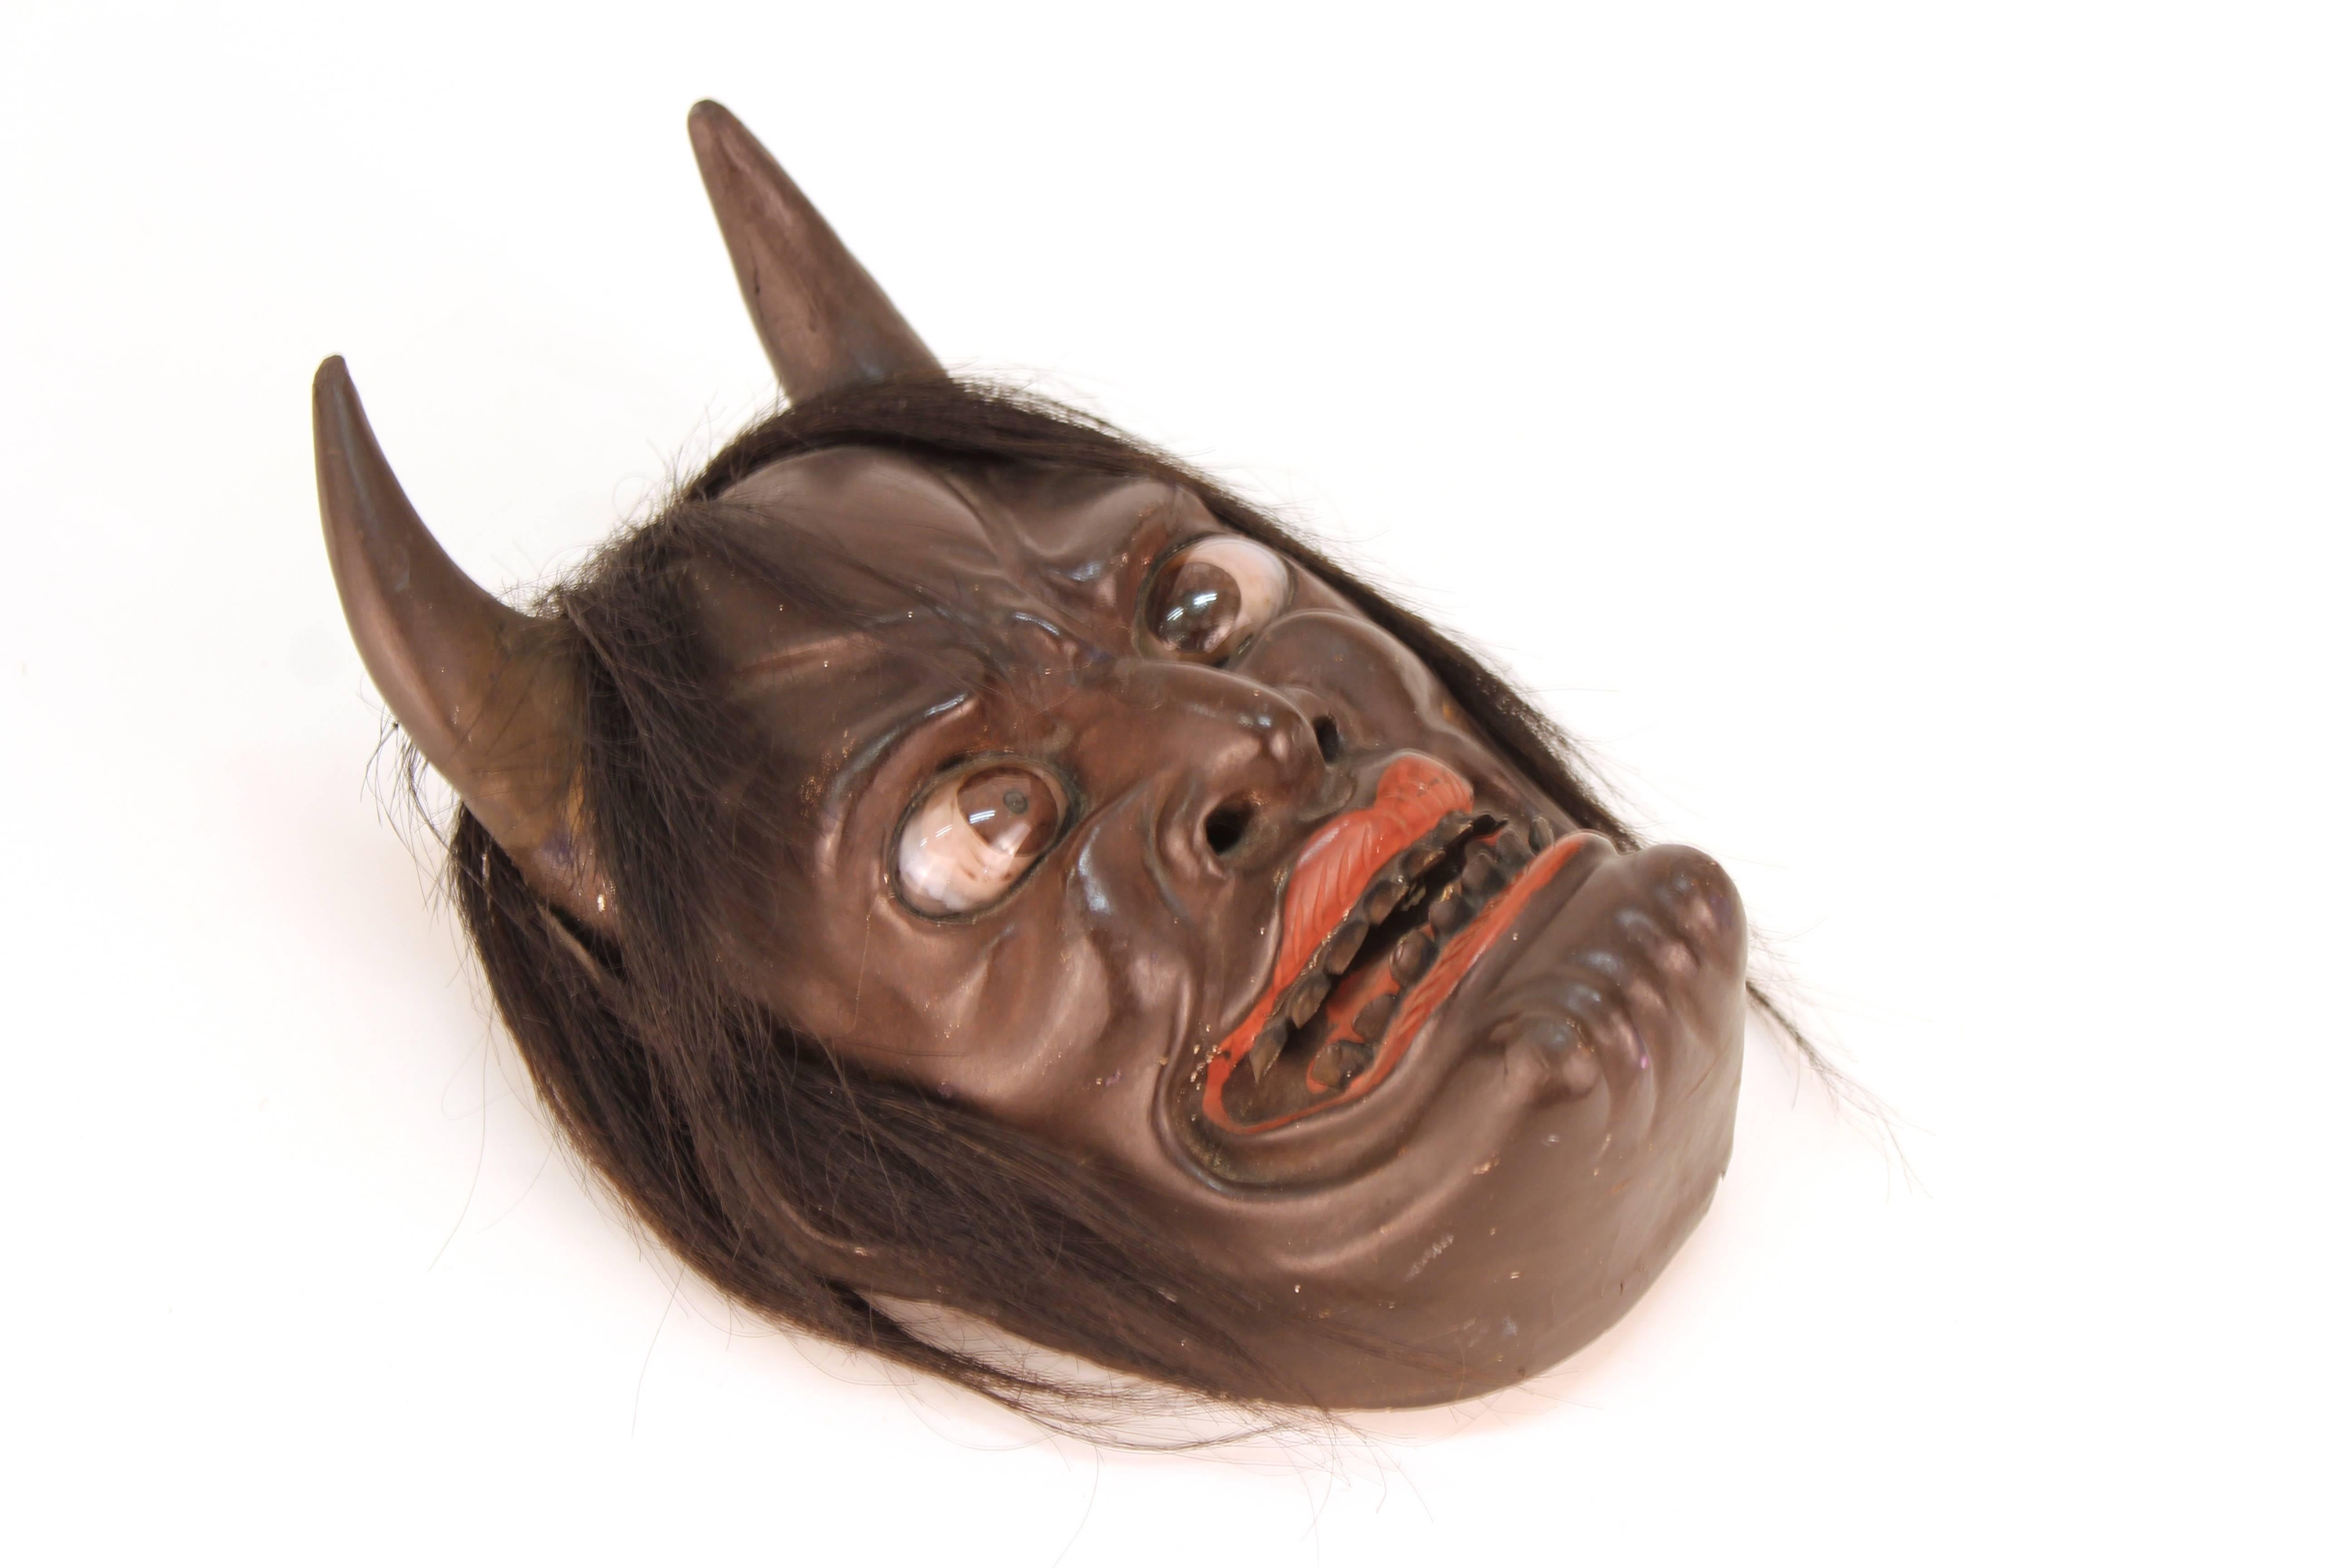 Eine japanische Ike-Maske aus Holz, die in der Edo-Zeit (1603-1868) um 1850 hergestellt wurde und ein Teufelsgesicht darstellt. Die Maske ist sehr detailliert und hat eingefügte Augen und Haare, die an ihr befestigt sind.